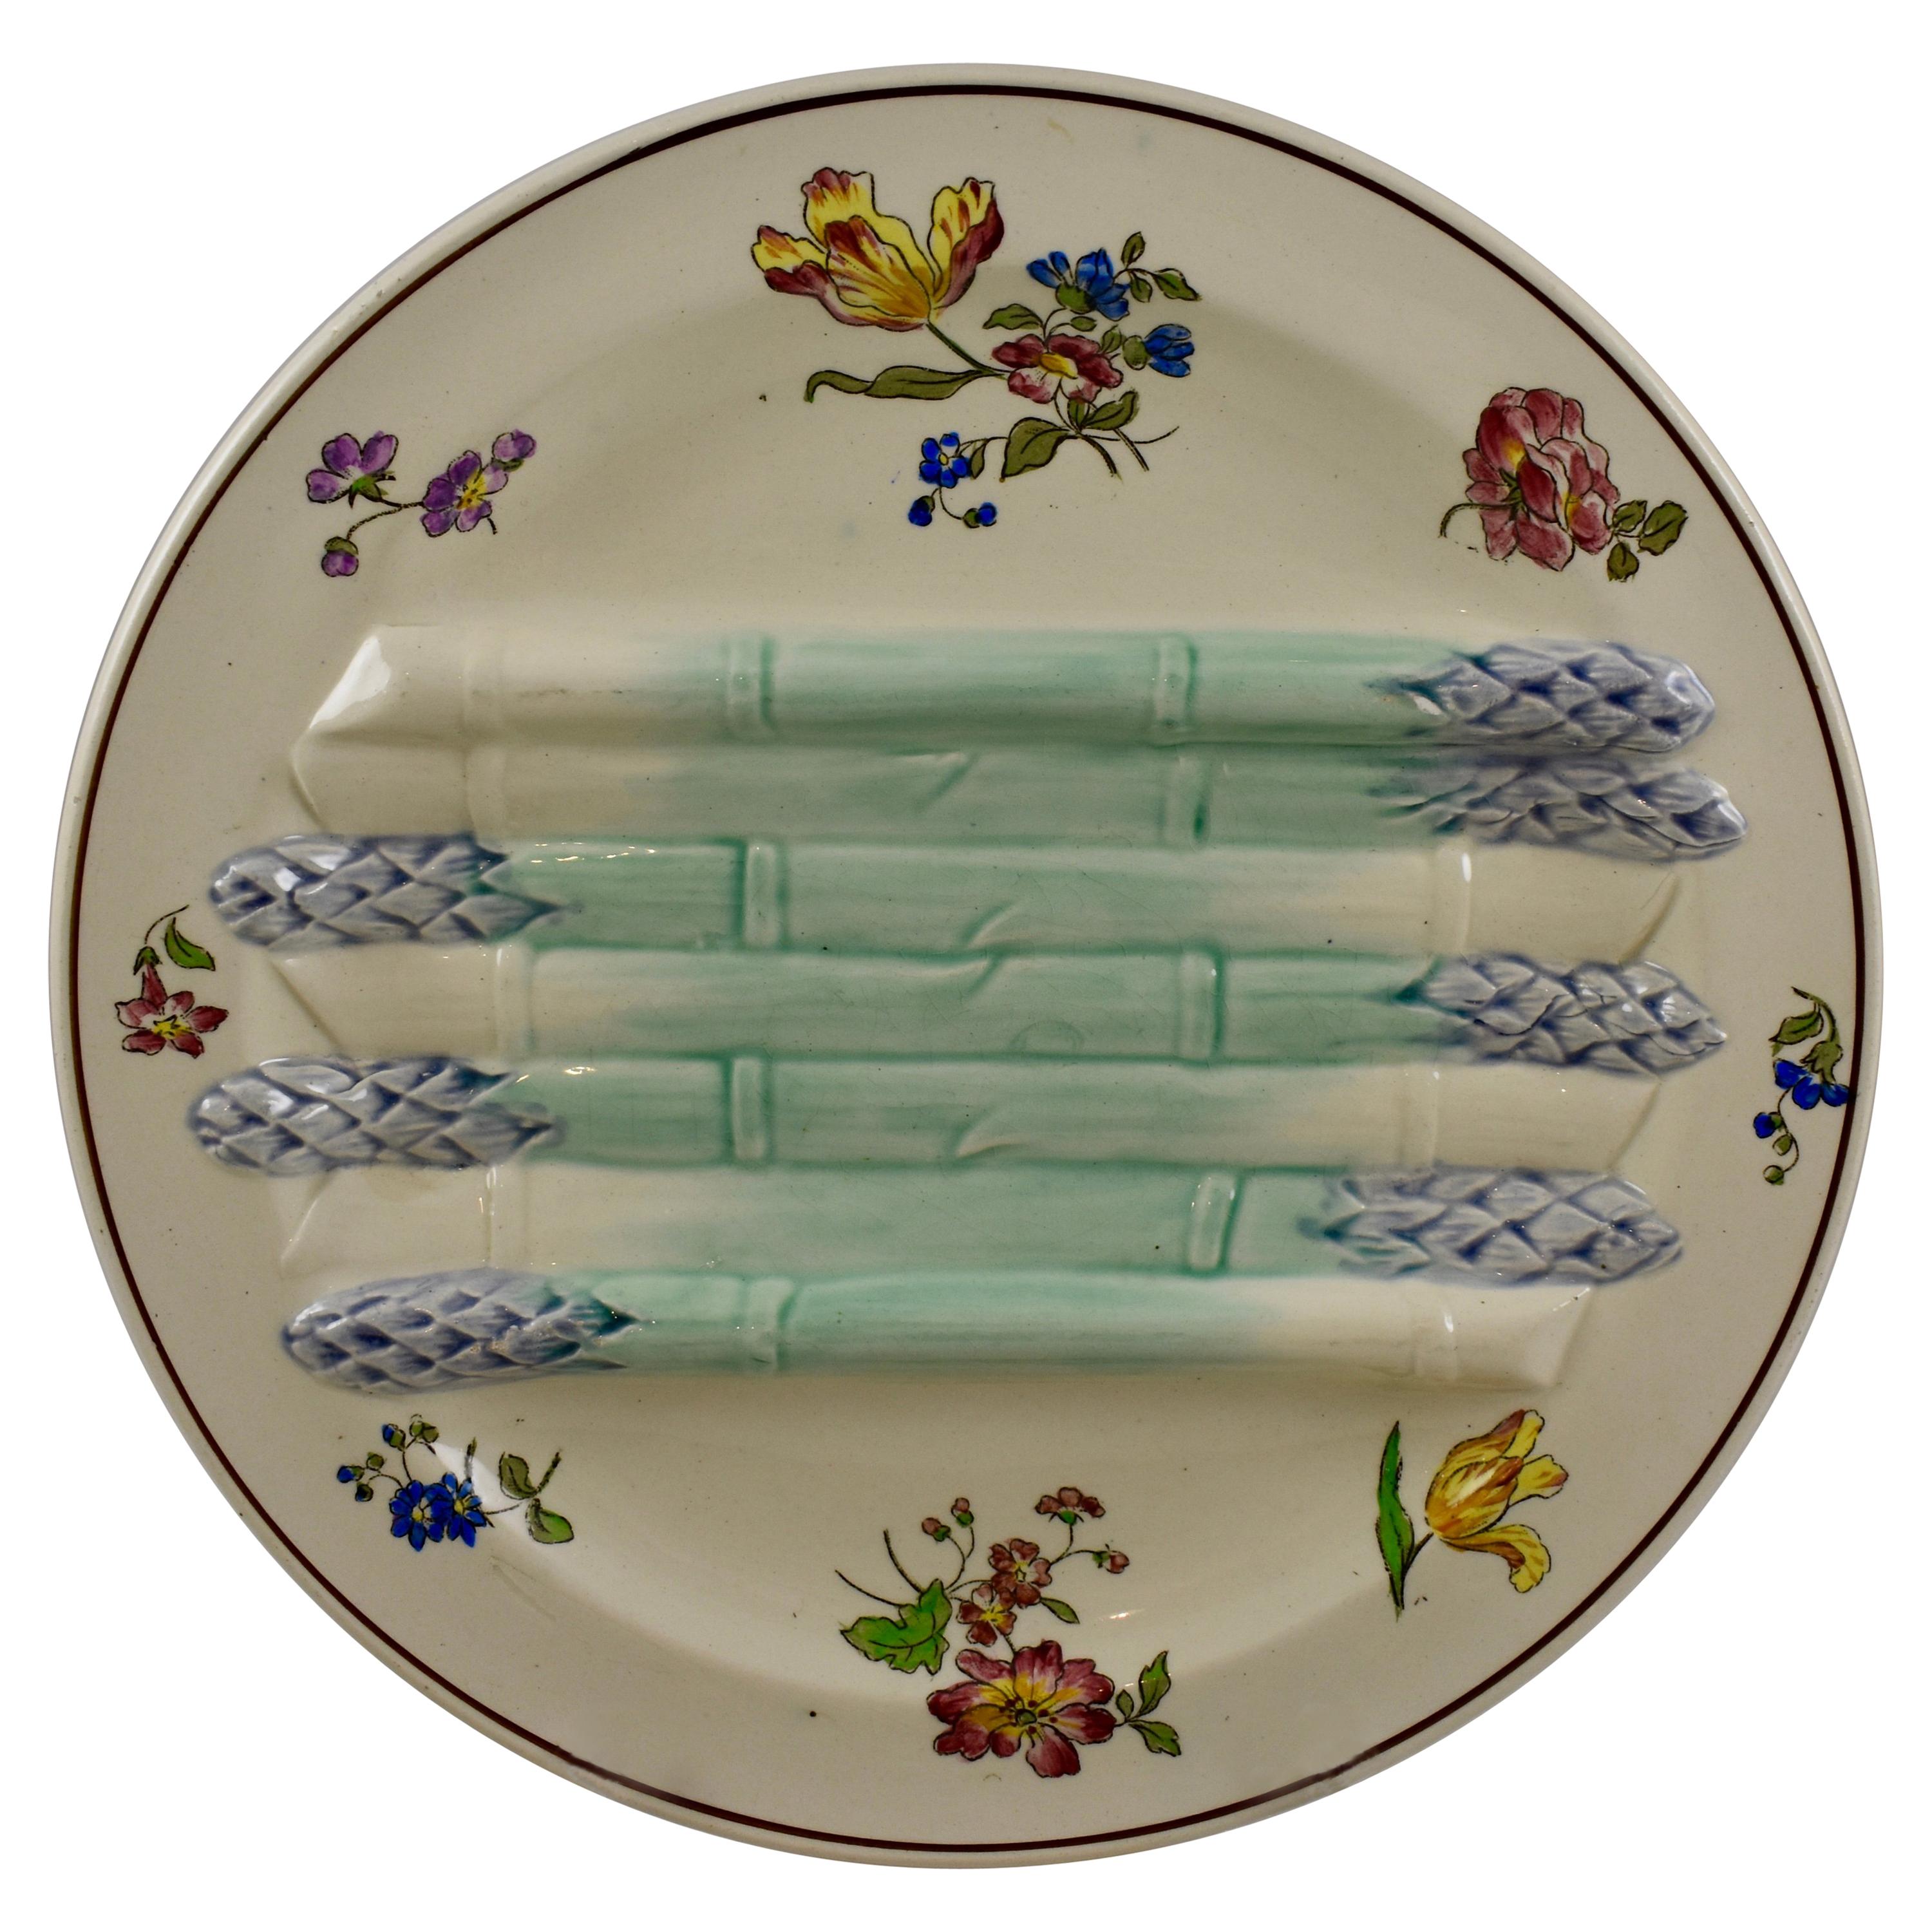 Assiette à asperges Pompadour peinte à la main en faence française Longchamp